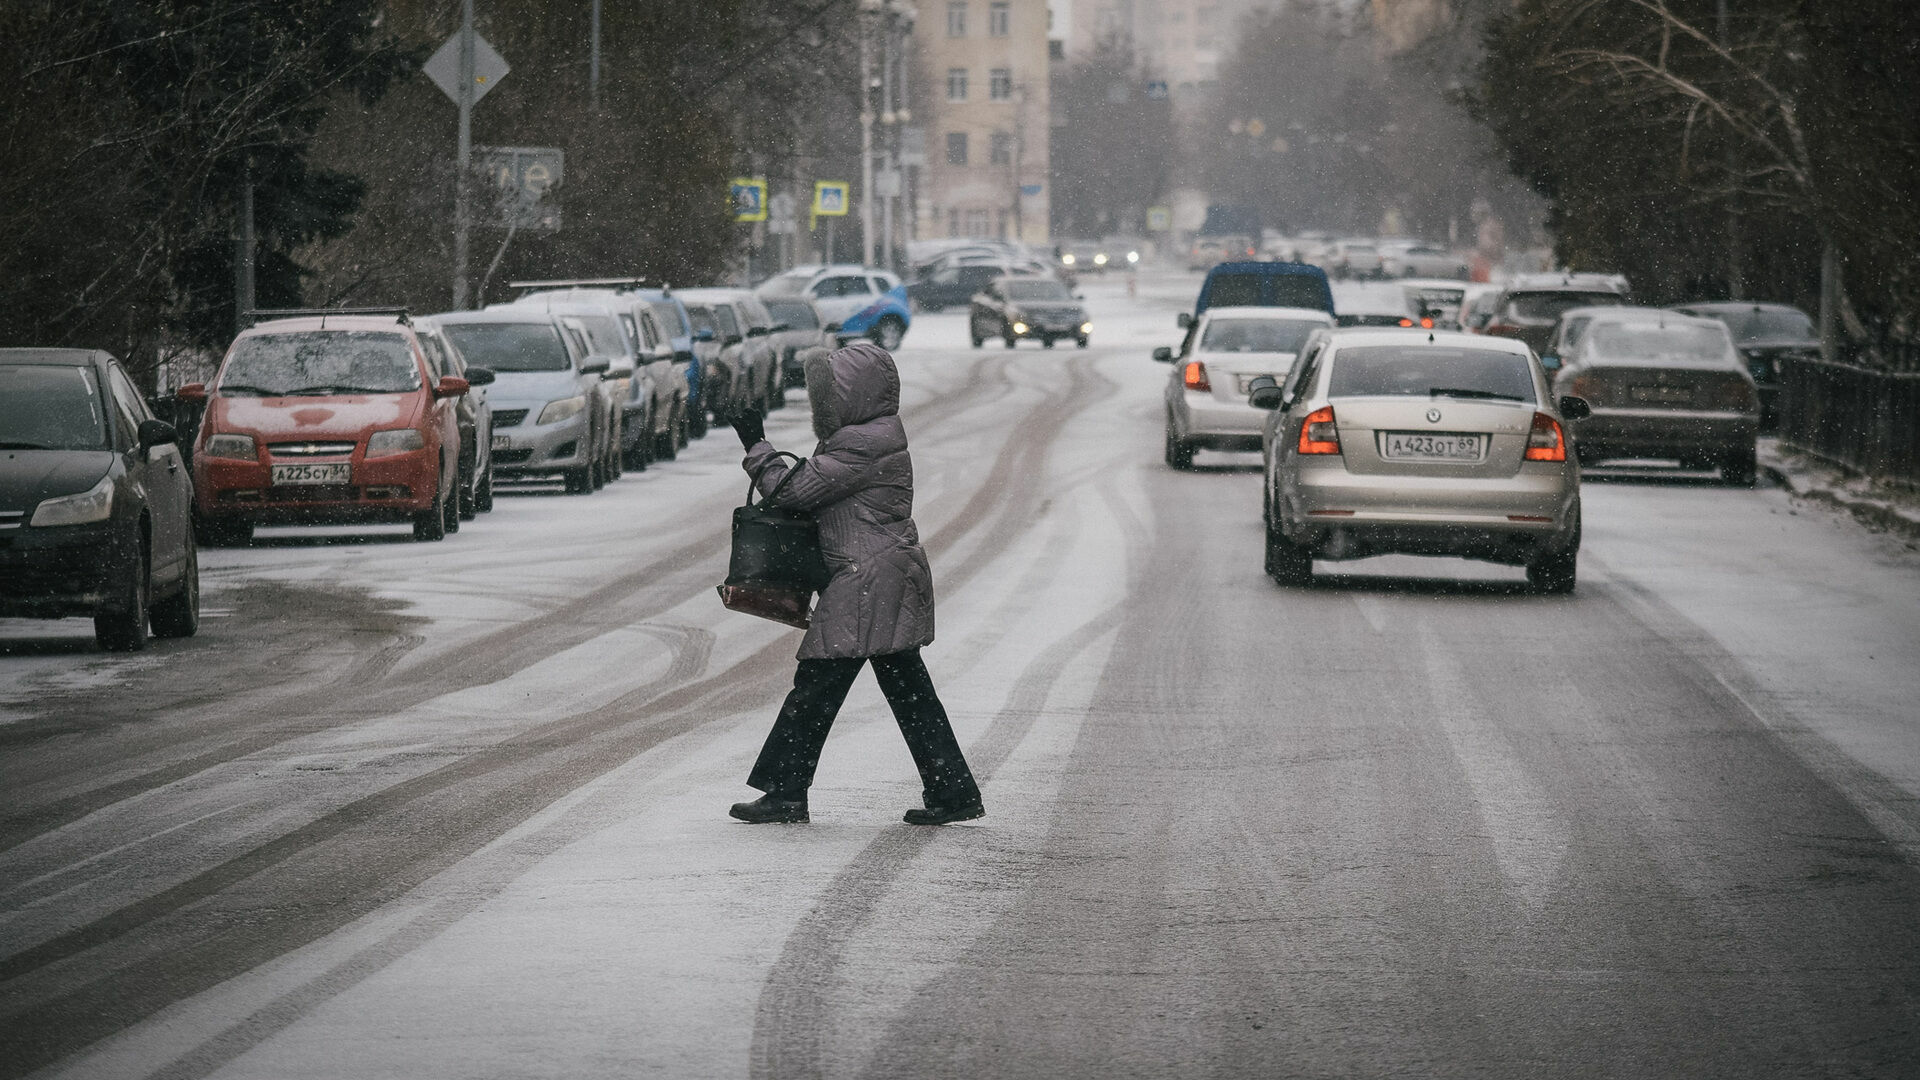 Назван виновный в сходе снега с перехода на проспекте Гагарина